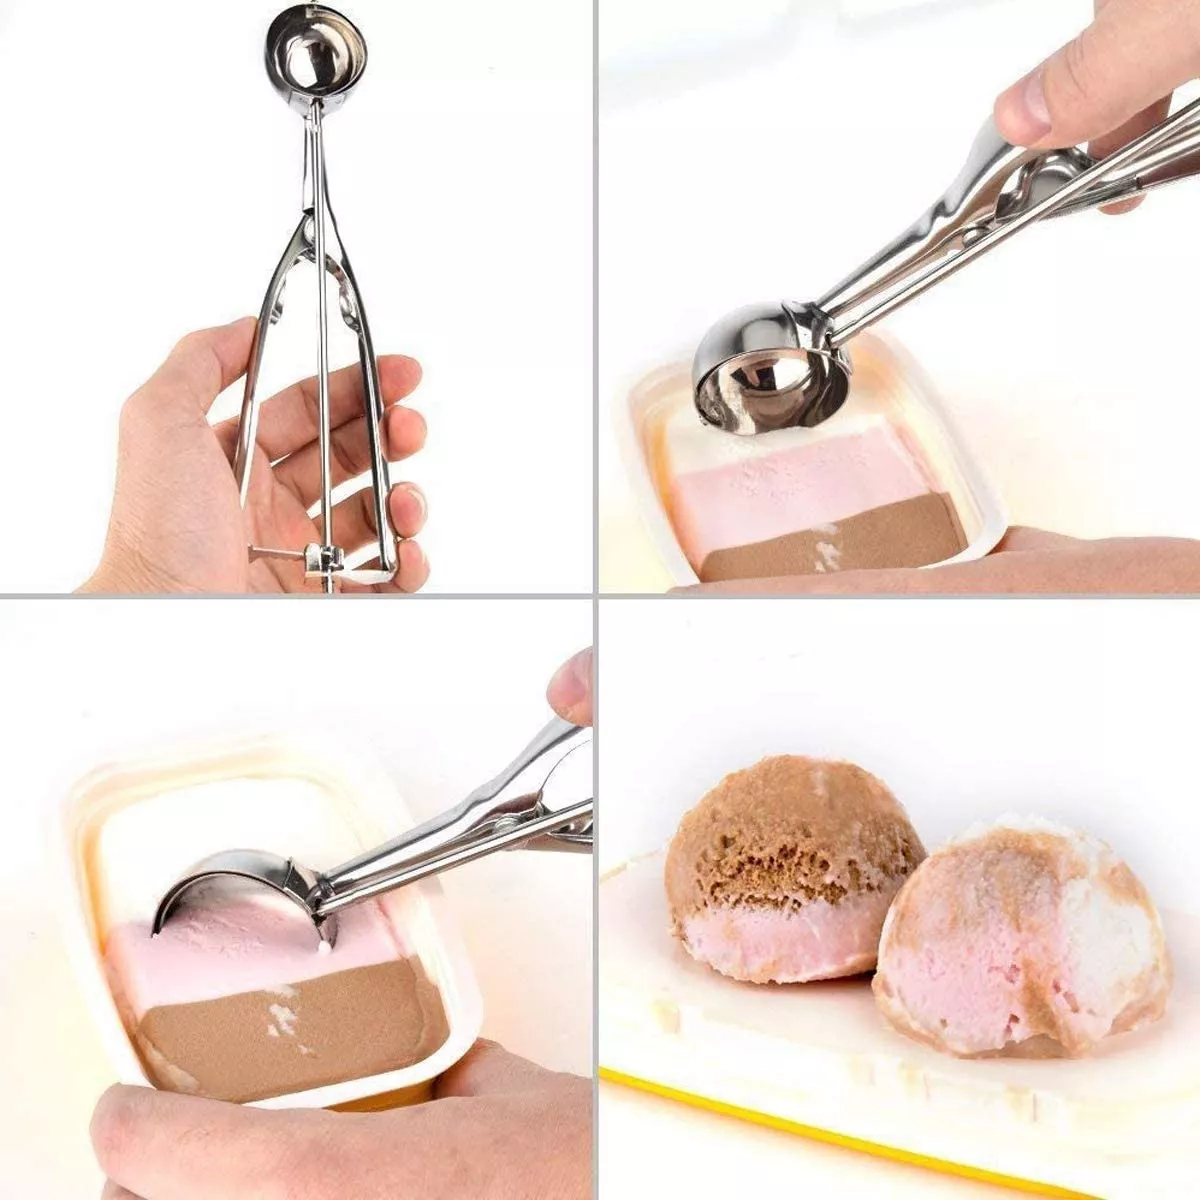 Segunda imagen para búsqueda de cuchara helado